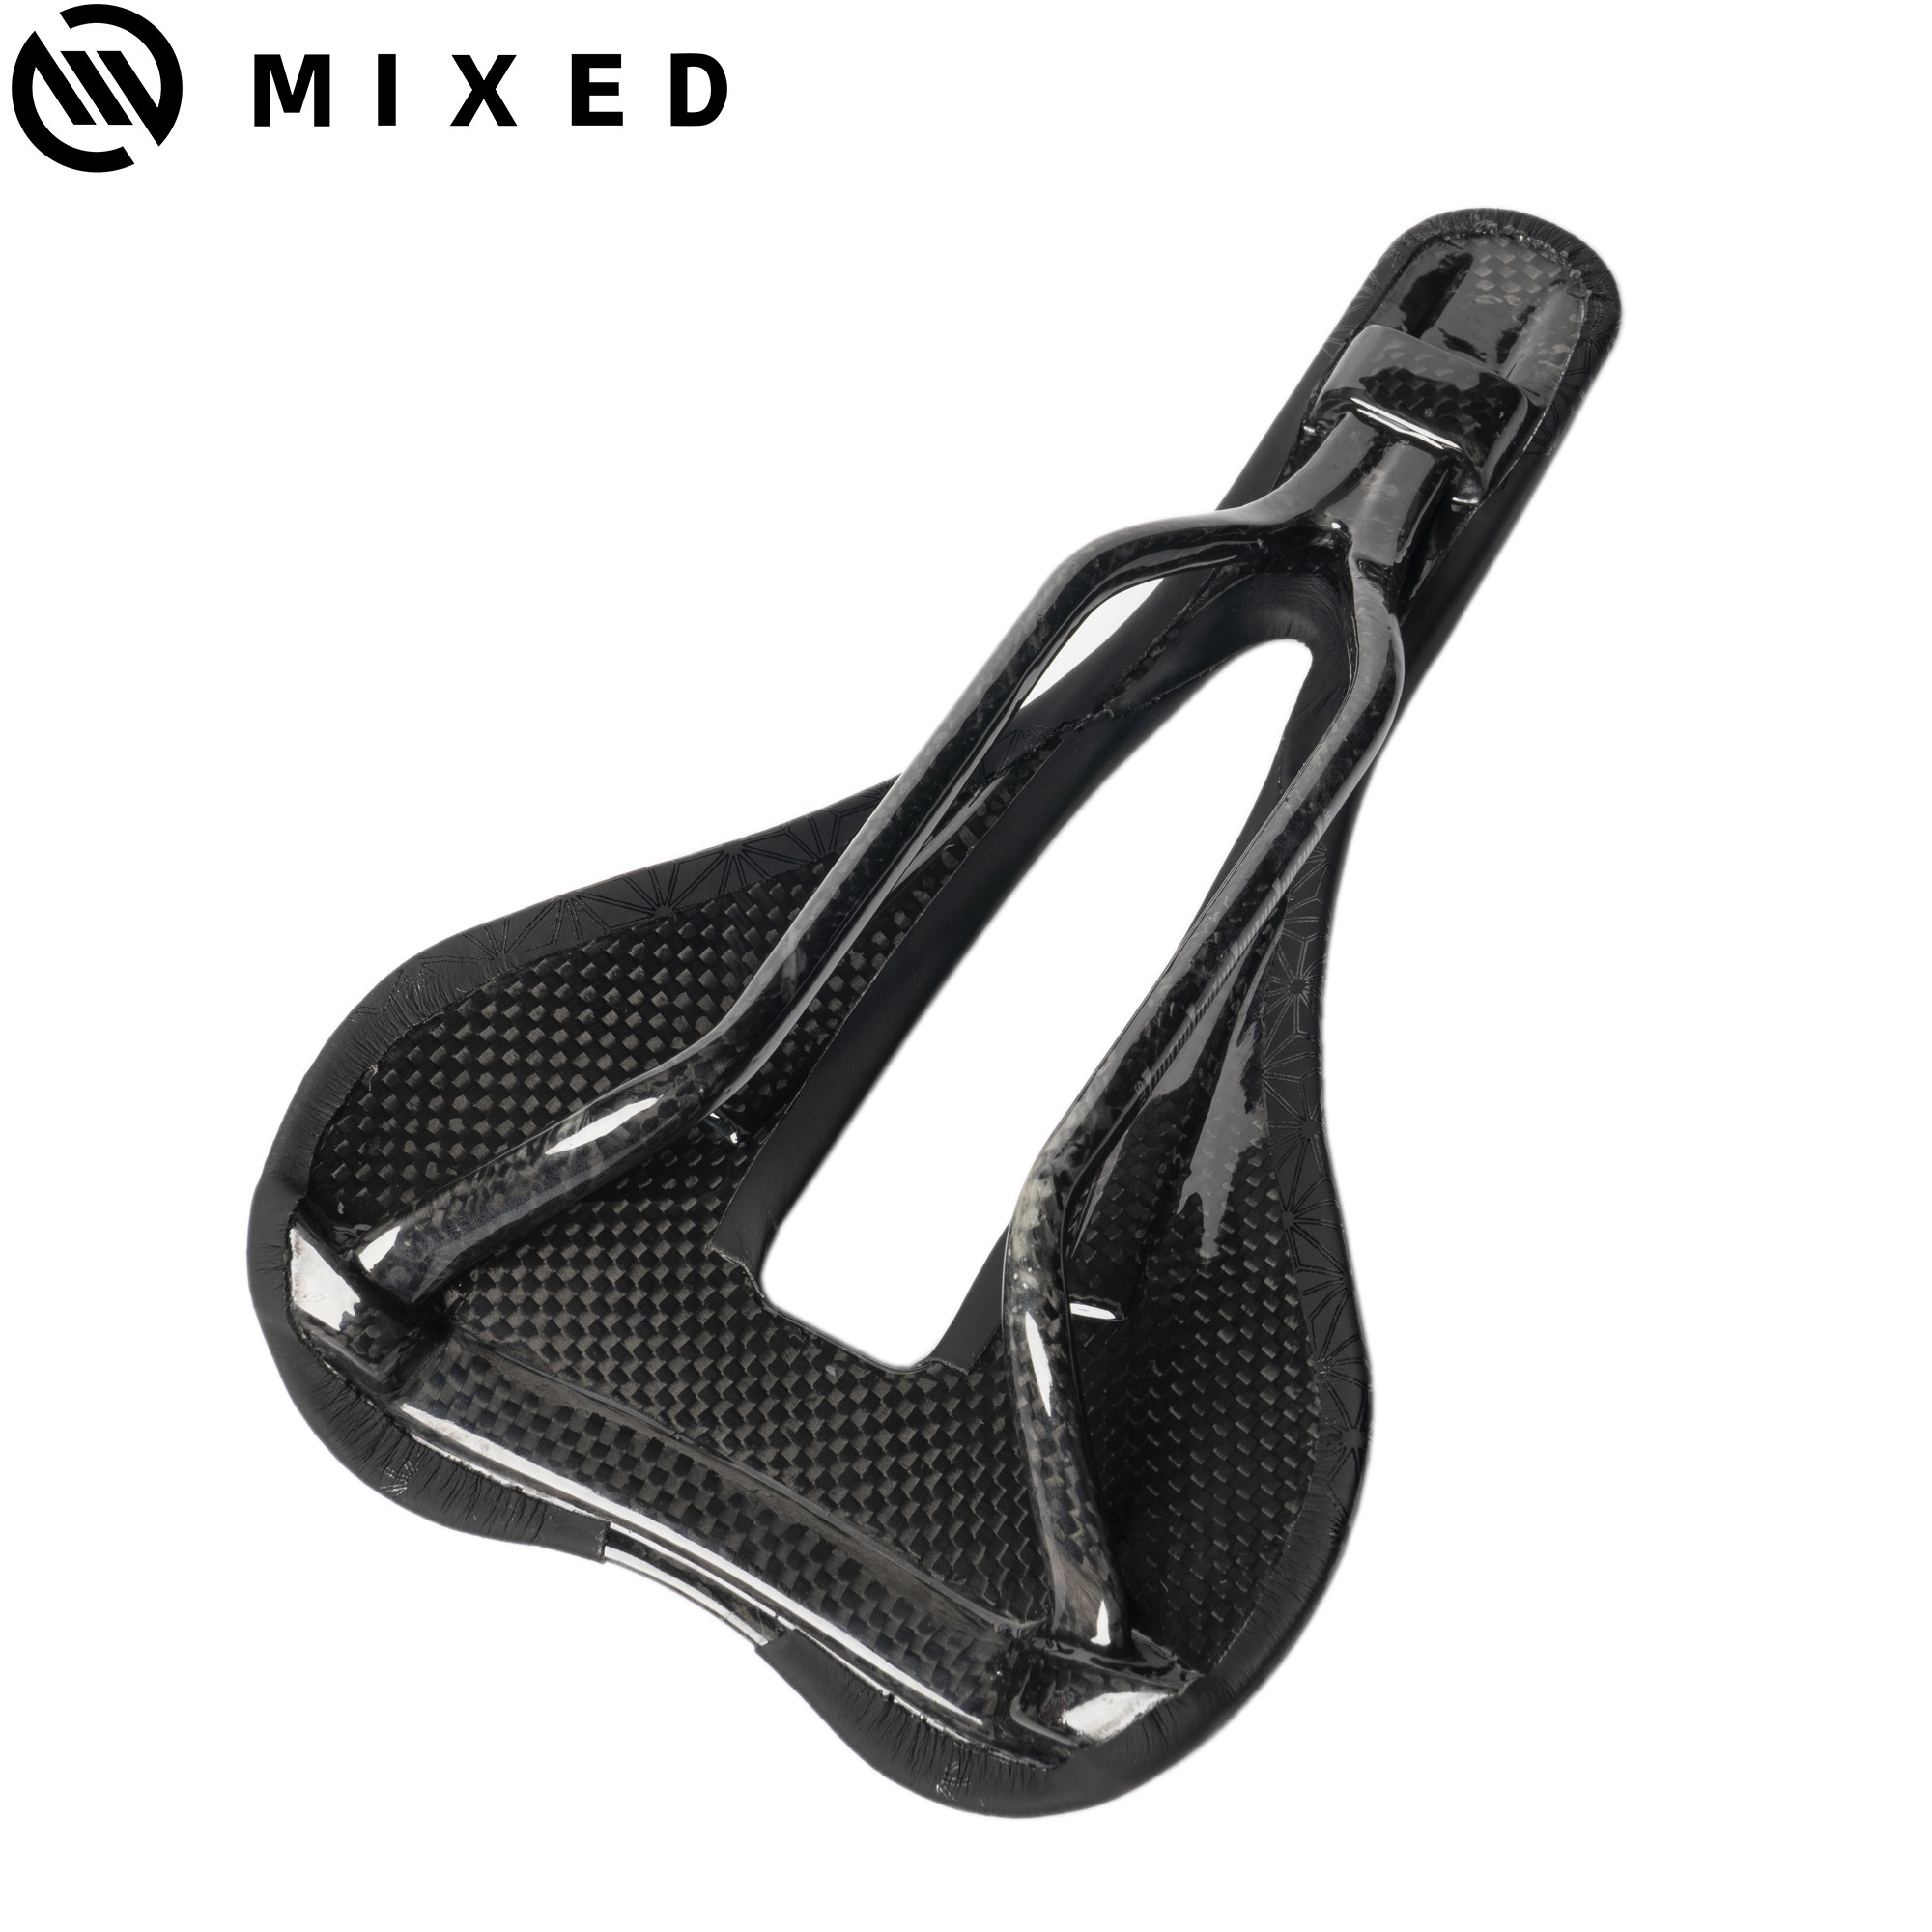 MIXED超轻碳纤维中空自行车公路车坐垫轻量化竞技型坐包鞍座包-图1